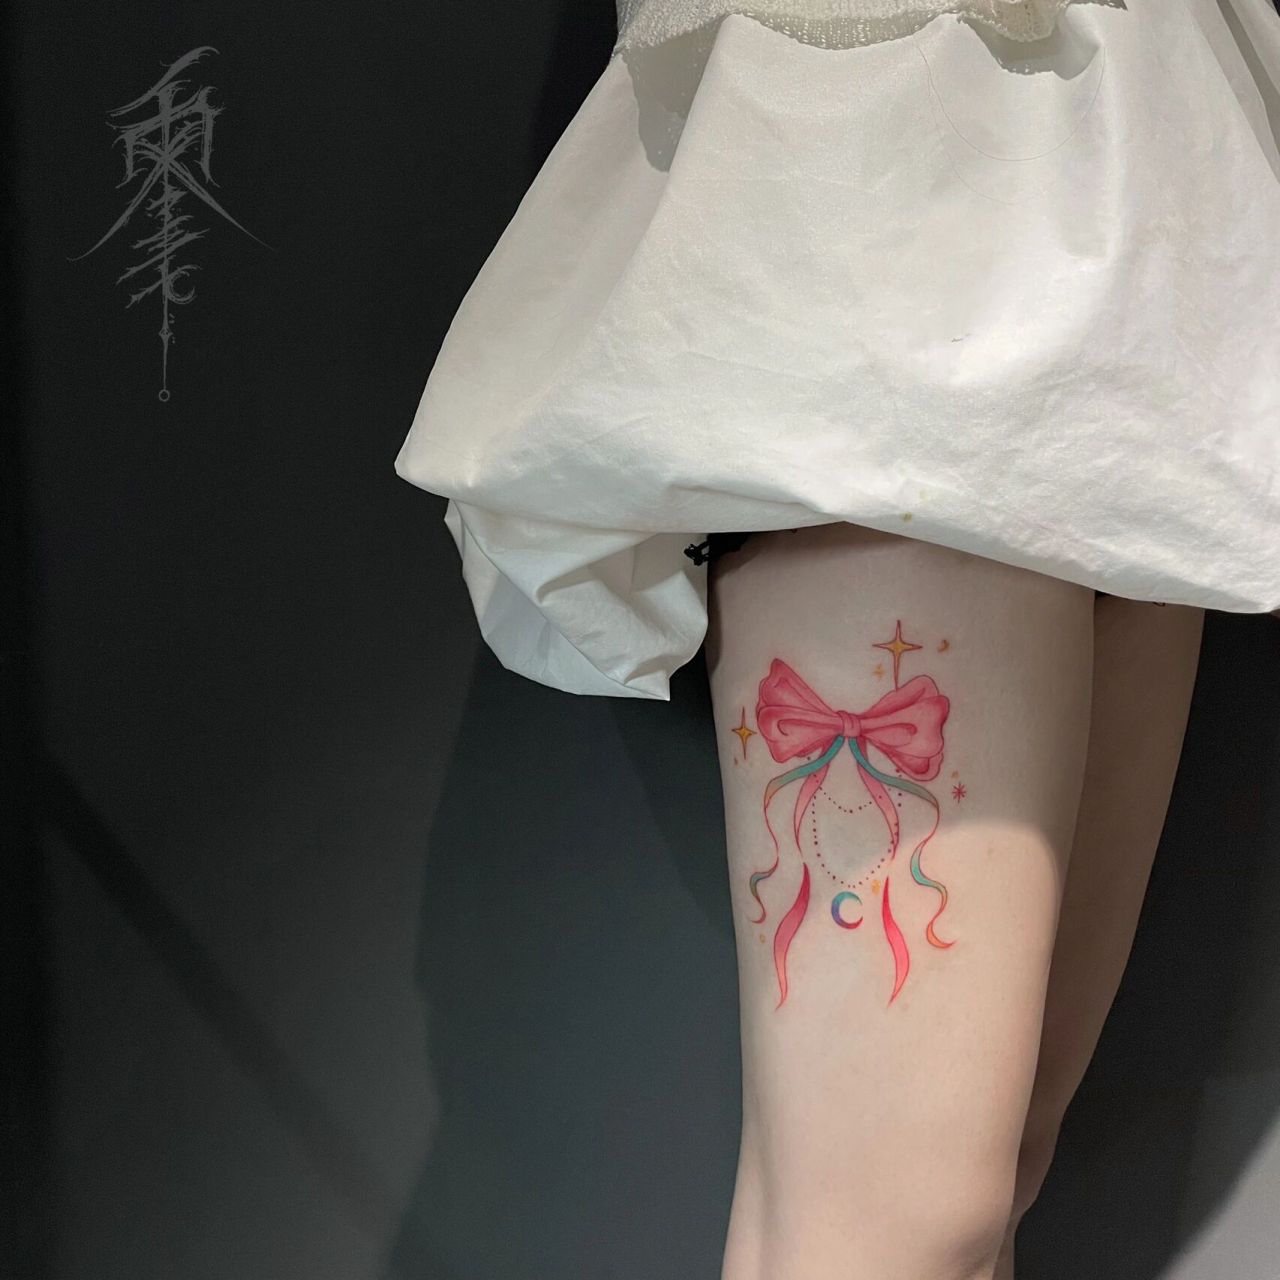 蝴蝶结纹身丨大腿纹身丨郑州纹身丨 夏天快来了,是该露腿啦9599小